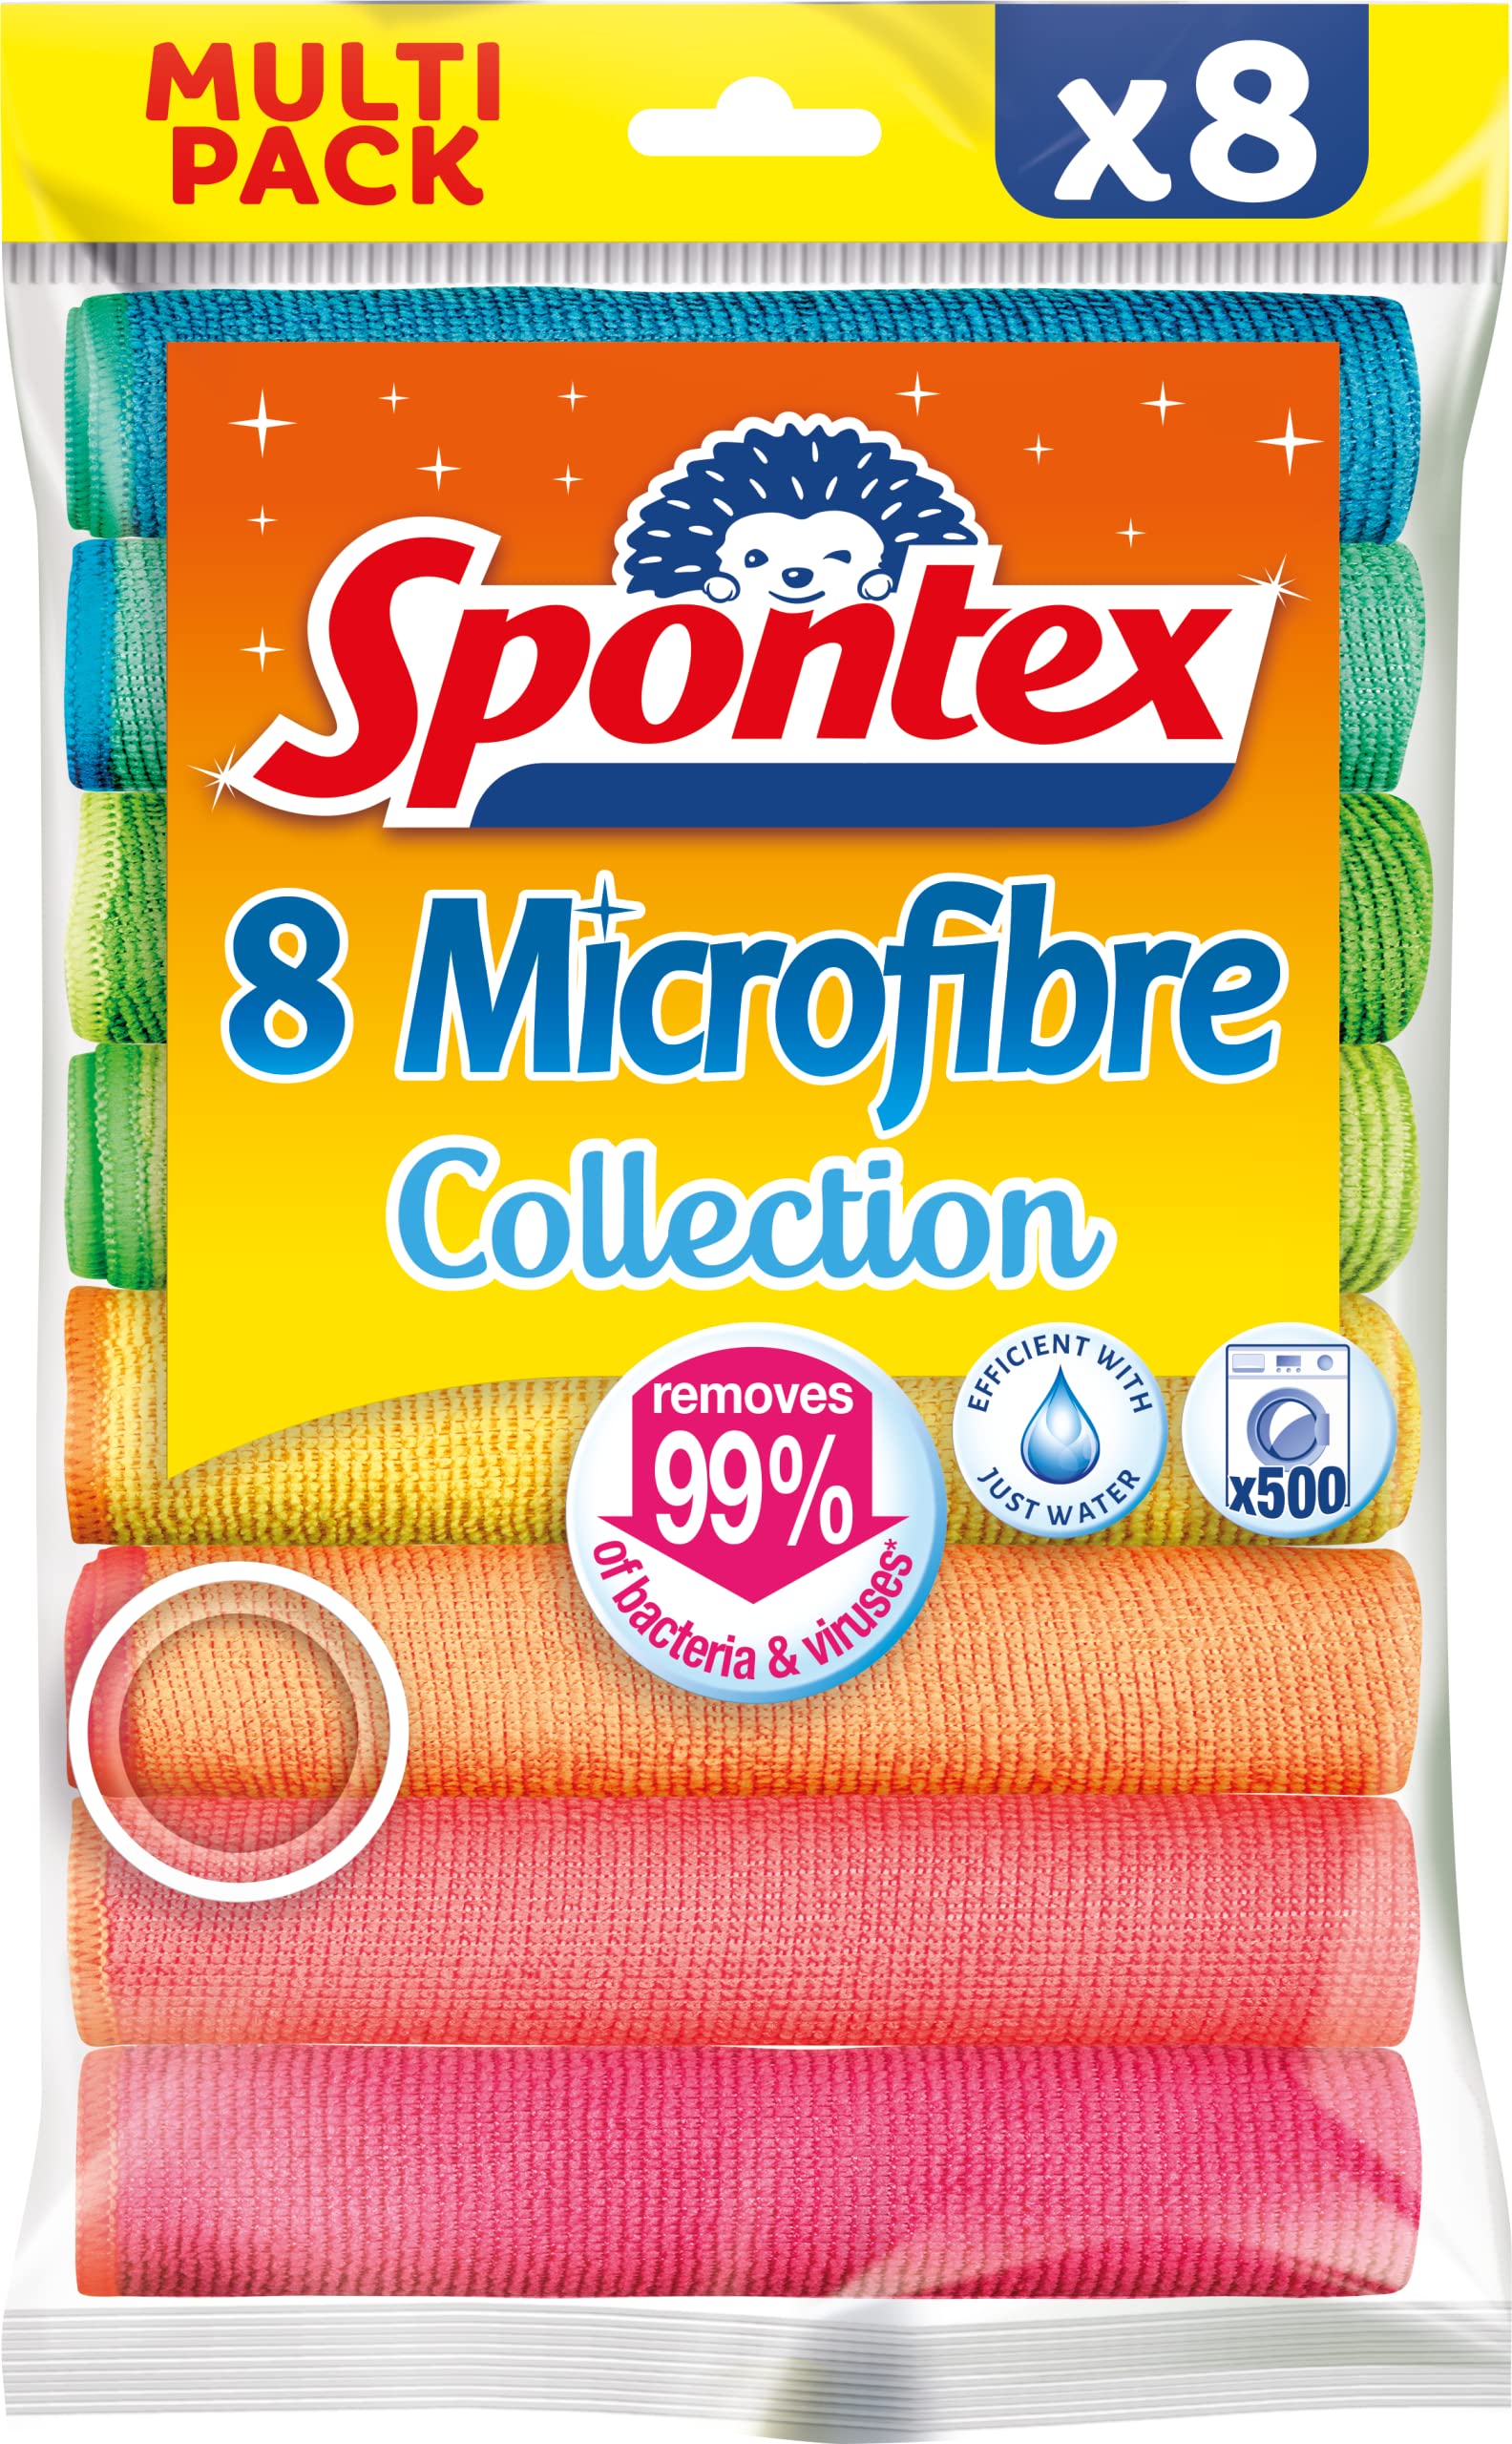 Spontex Microfibre Cloths Value Pack 8 per pack